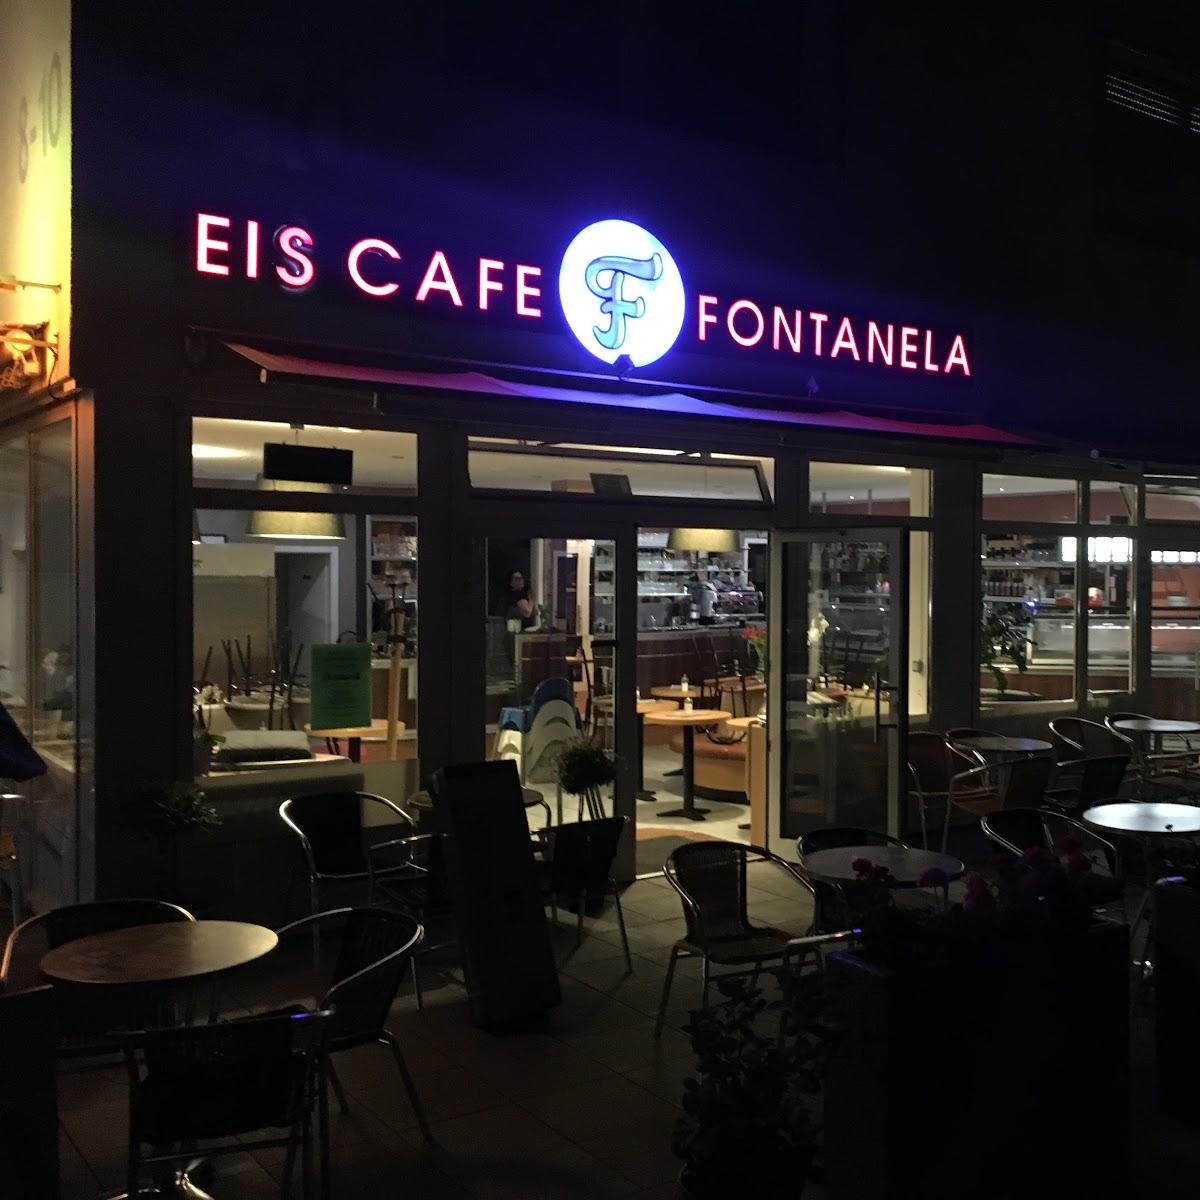 Restaurant "Eiscafé Fontanela" in Karben